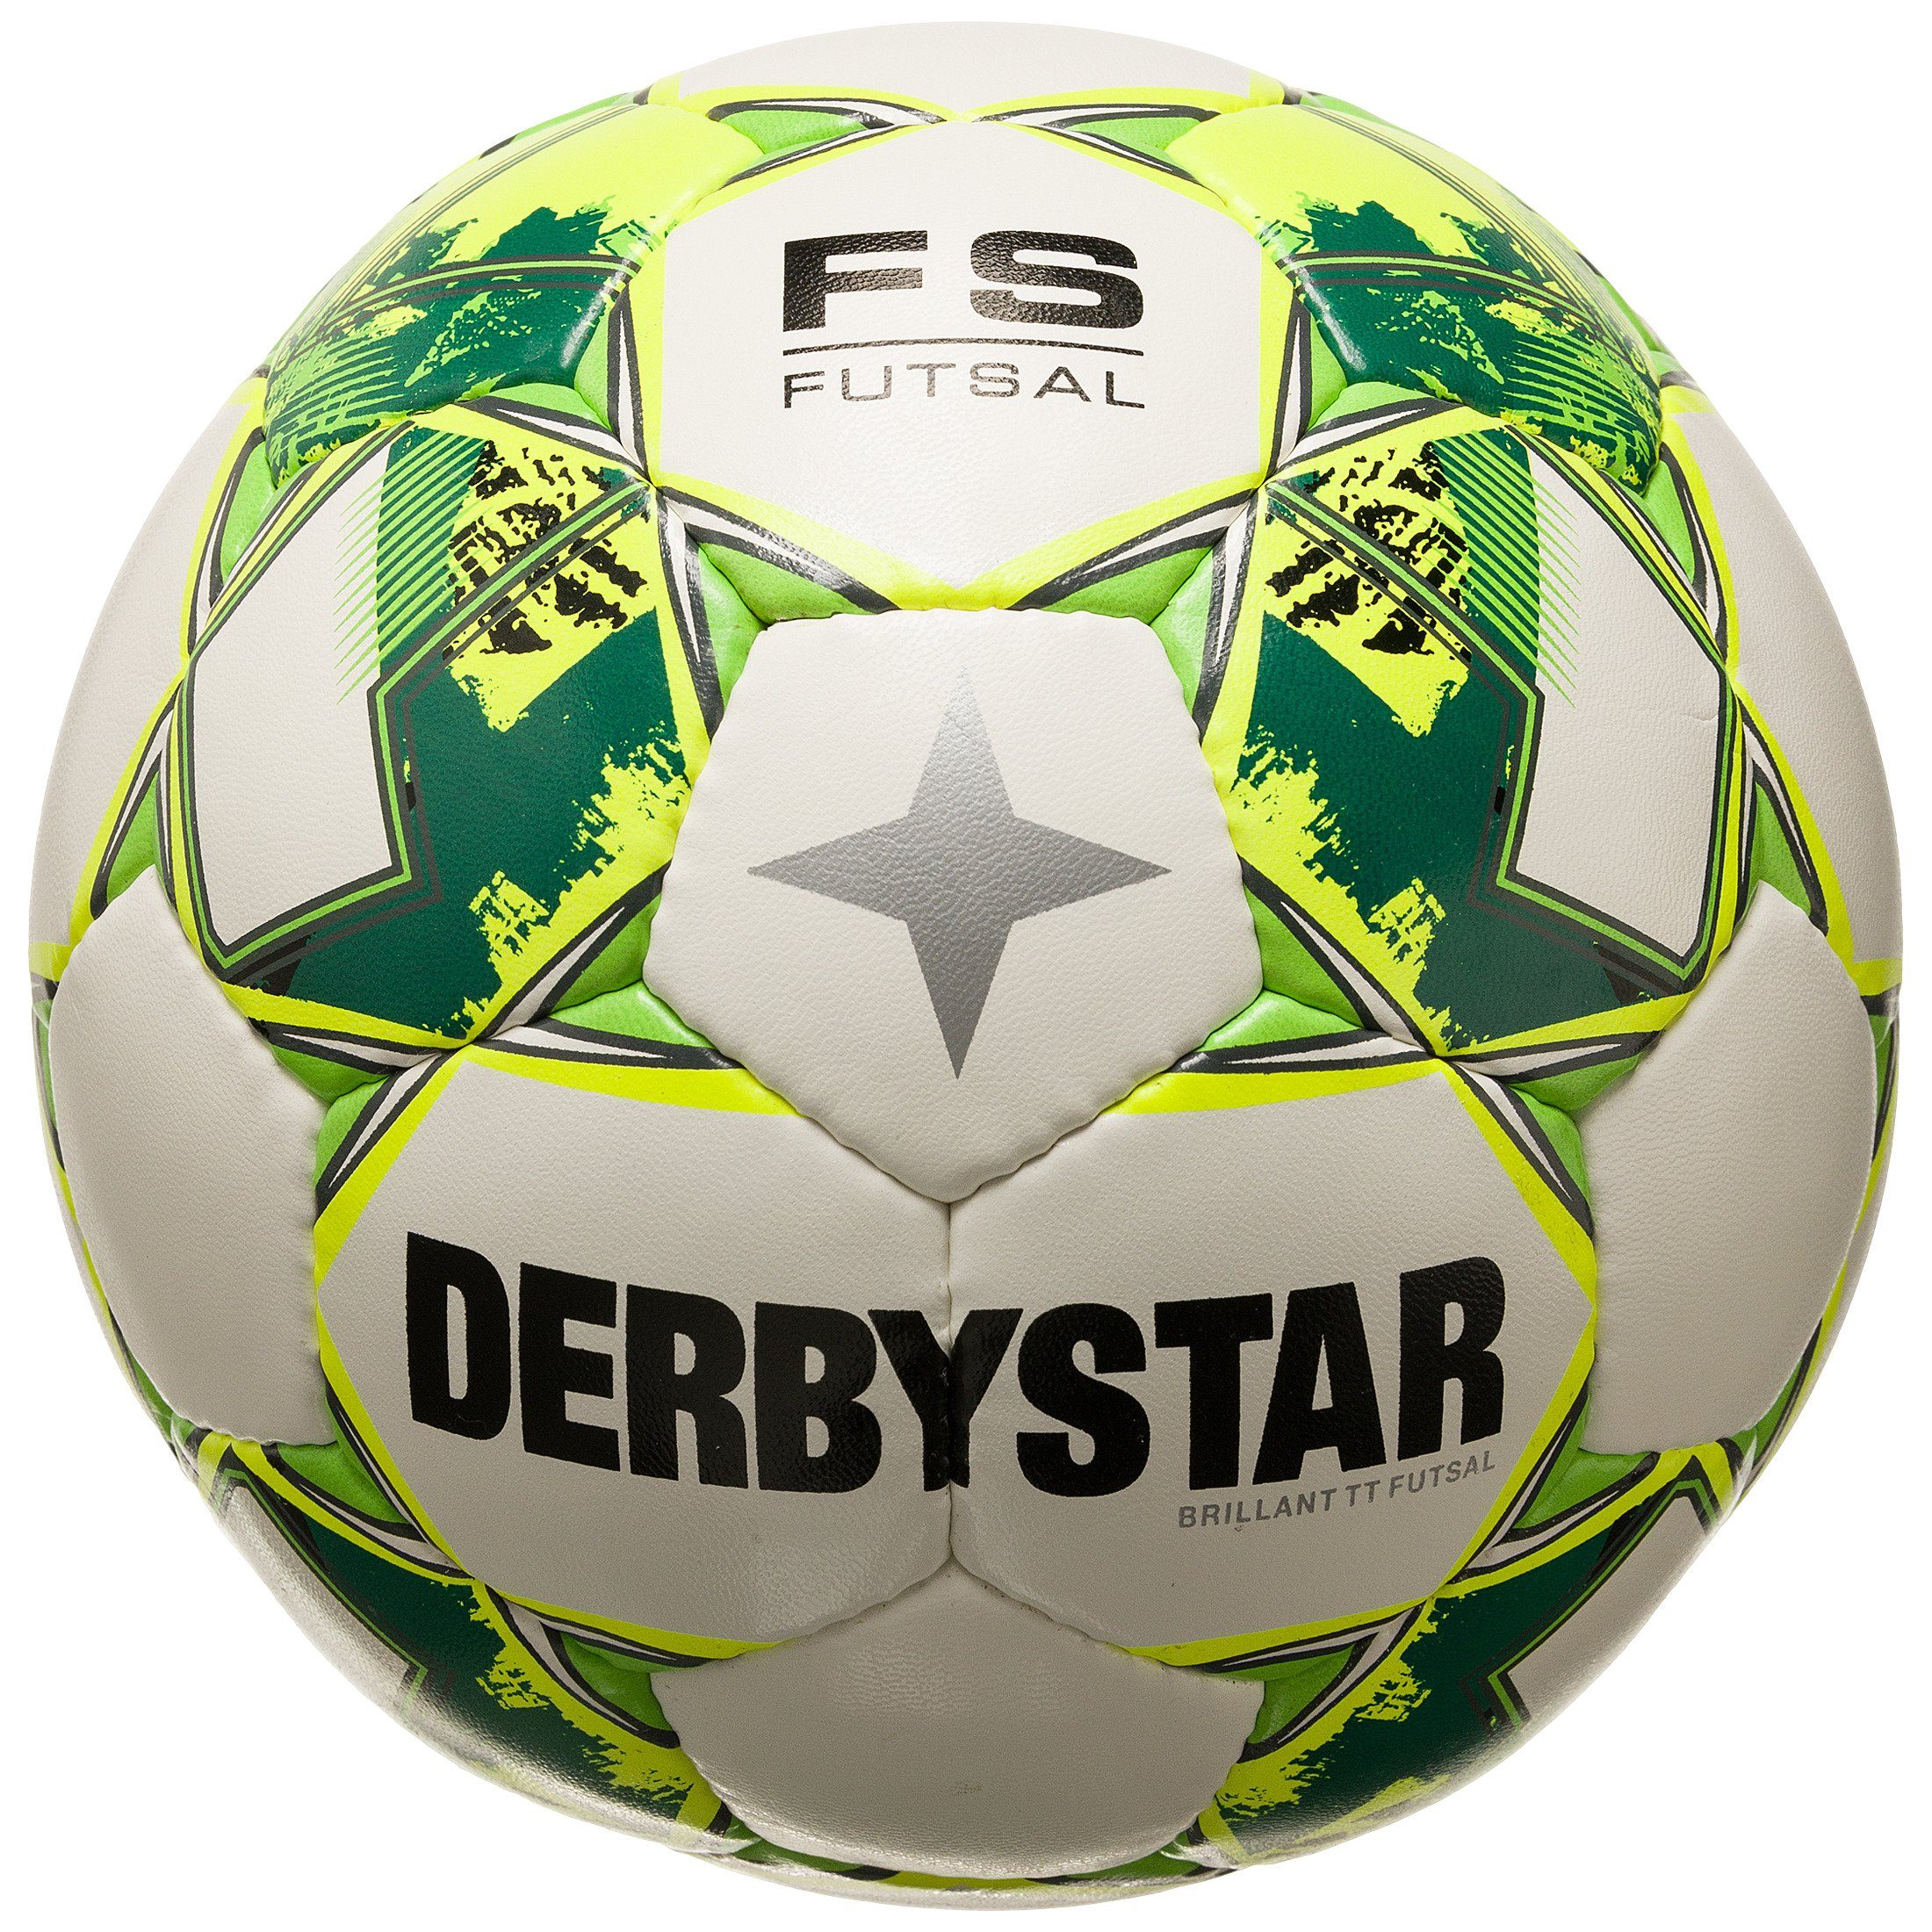 Fußball, v23 TT High-Visibility-Farben Fußball Brillant Derbystar für Sichtbarkeit